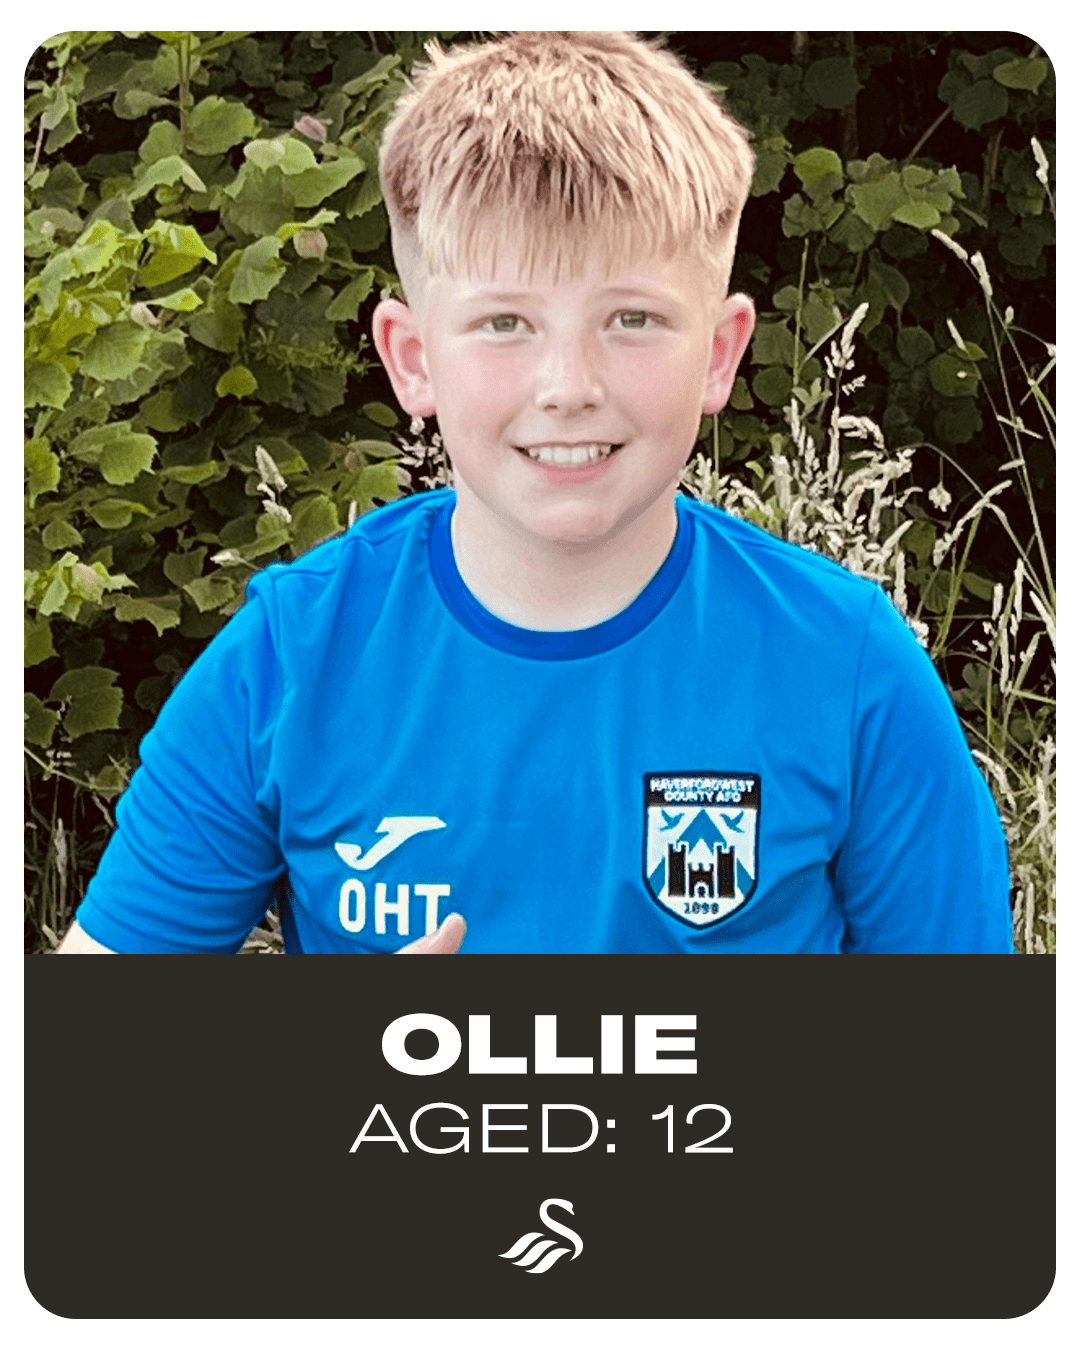 Ollie, aged 12